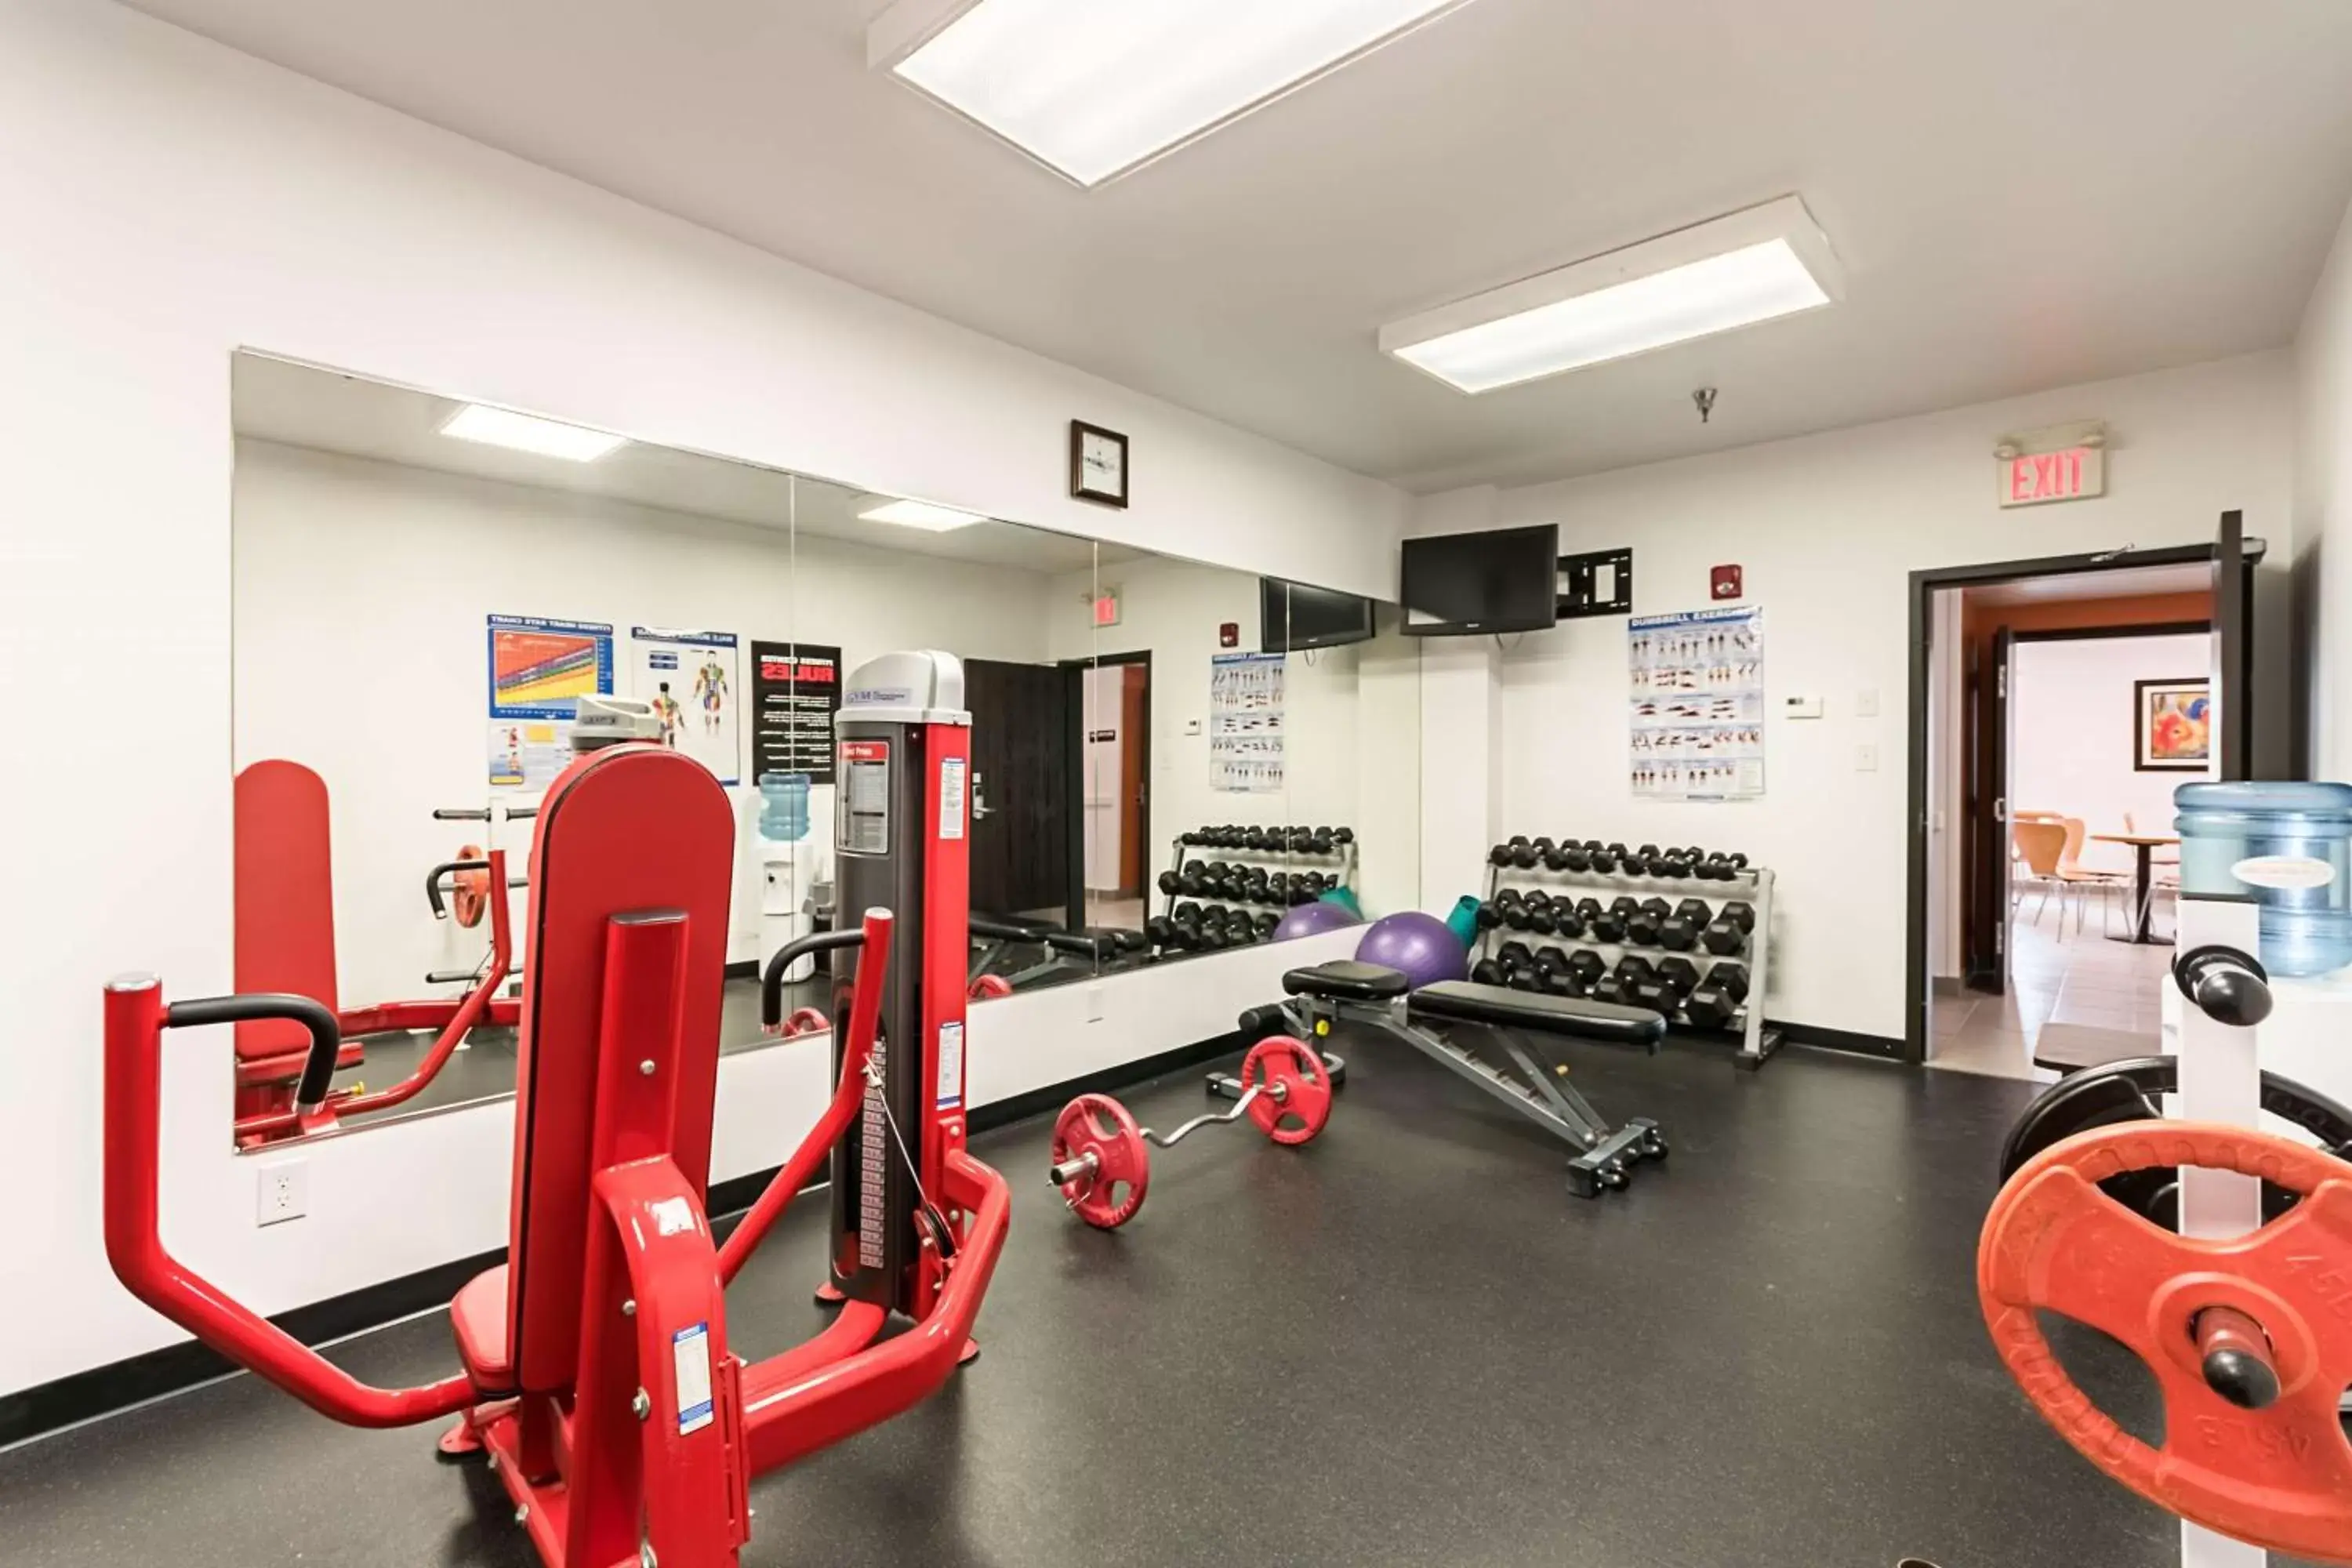 Fitness centre/facilities, Fitness Center/Facilities in Motel 6-Moosomin, SK